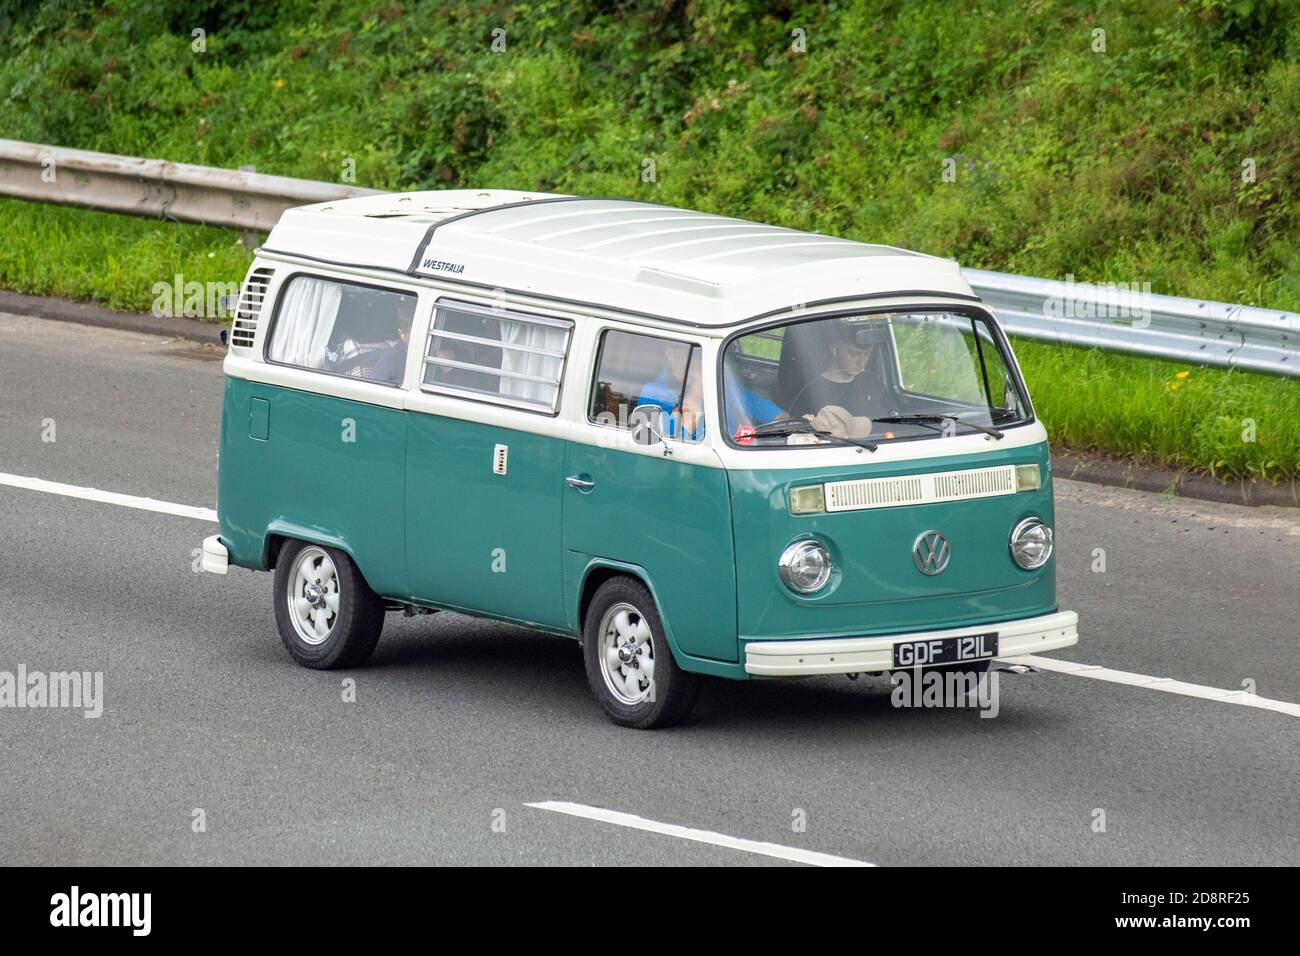 Volkswagen motor caravan hi-res stock photography and images - Alamy